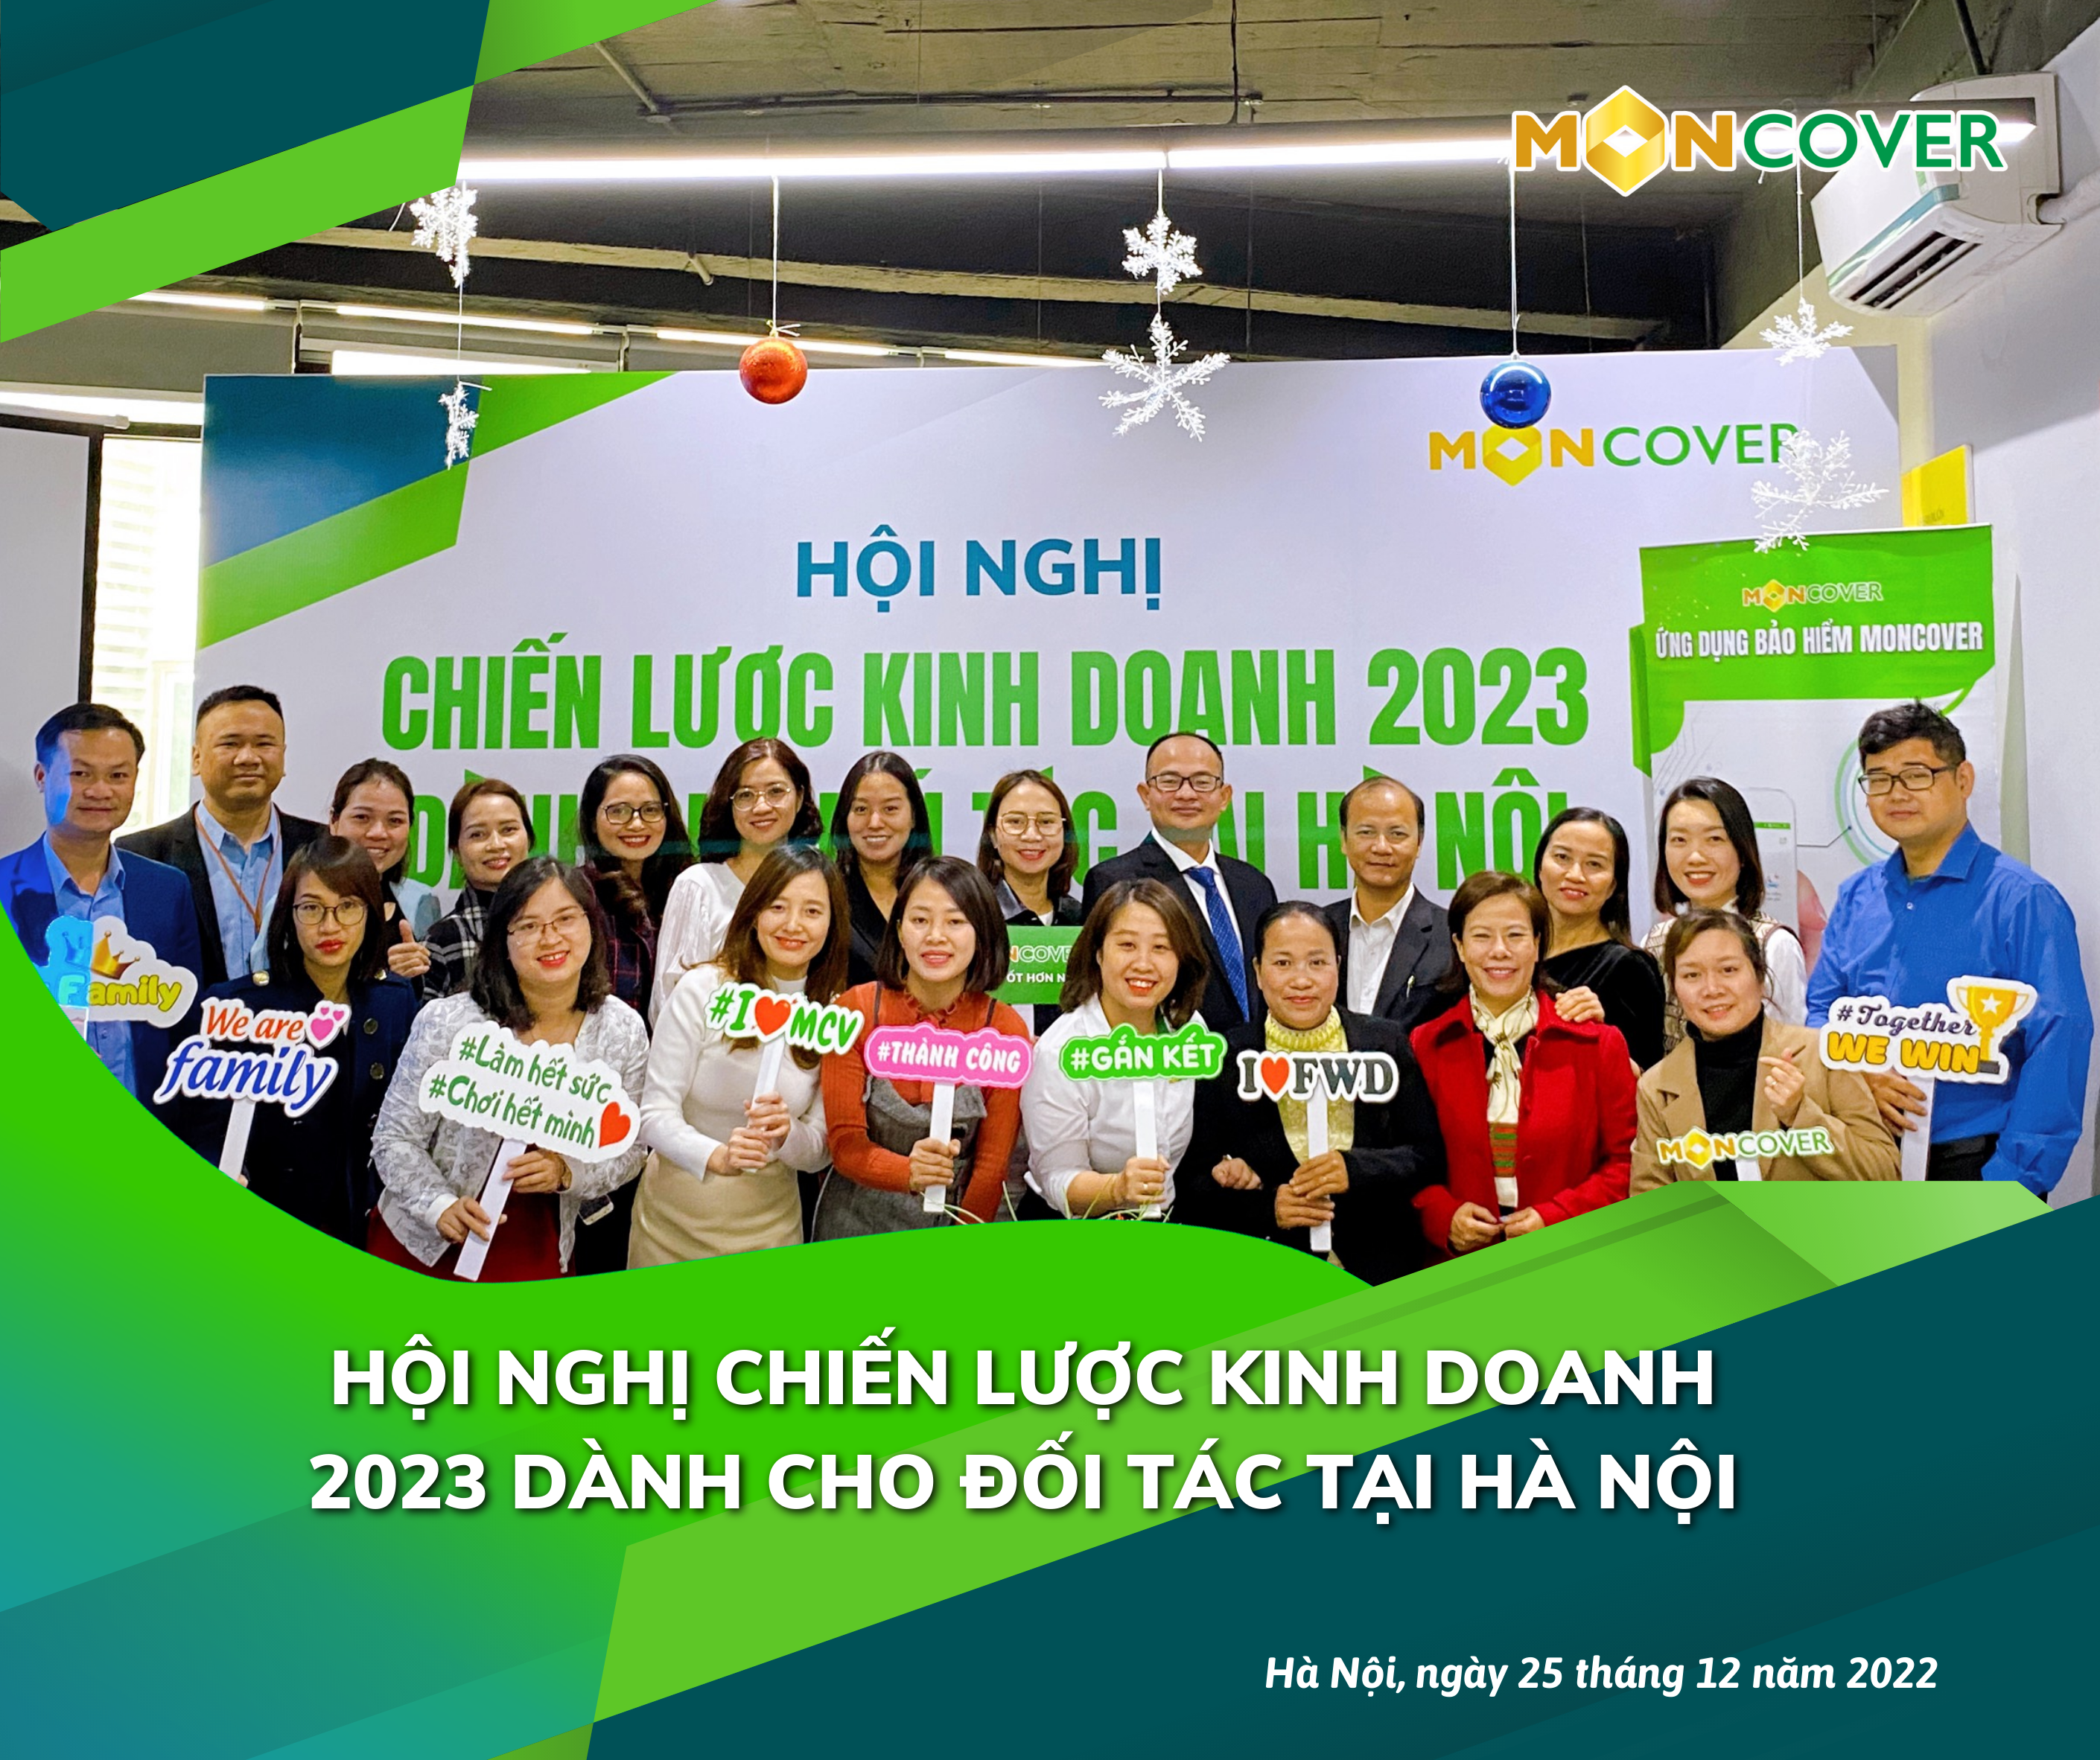 Hội nghị Chiến lược kinh doanh 2023 dành cho đối tác tại Hà Nội